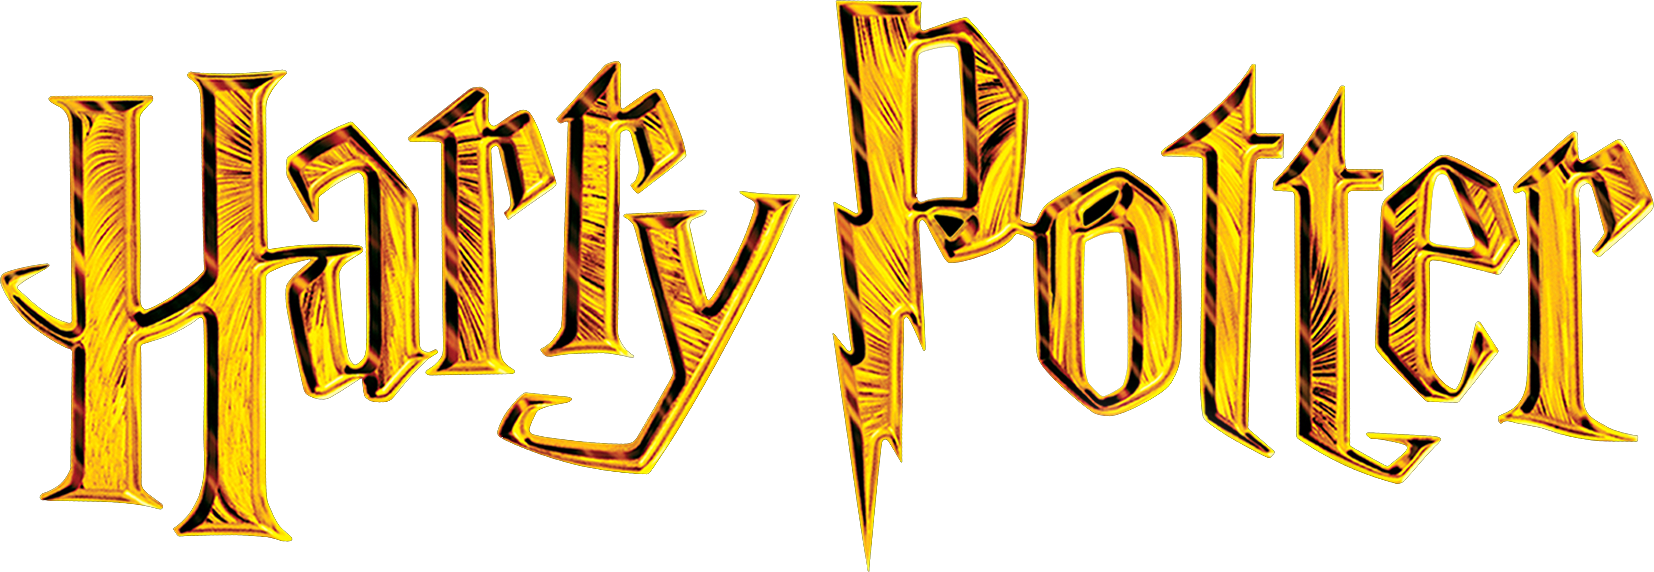 Image result for harry potter logo